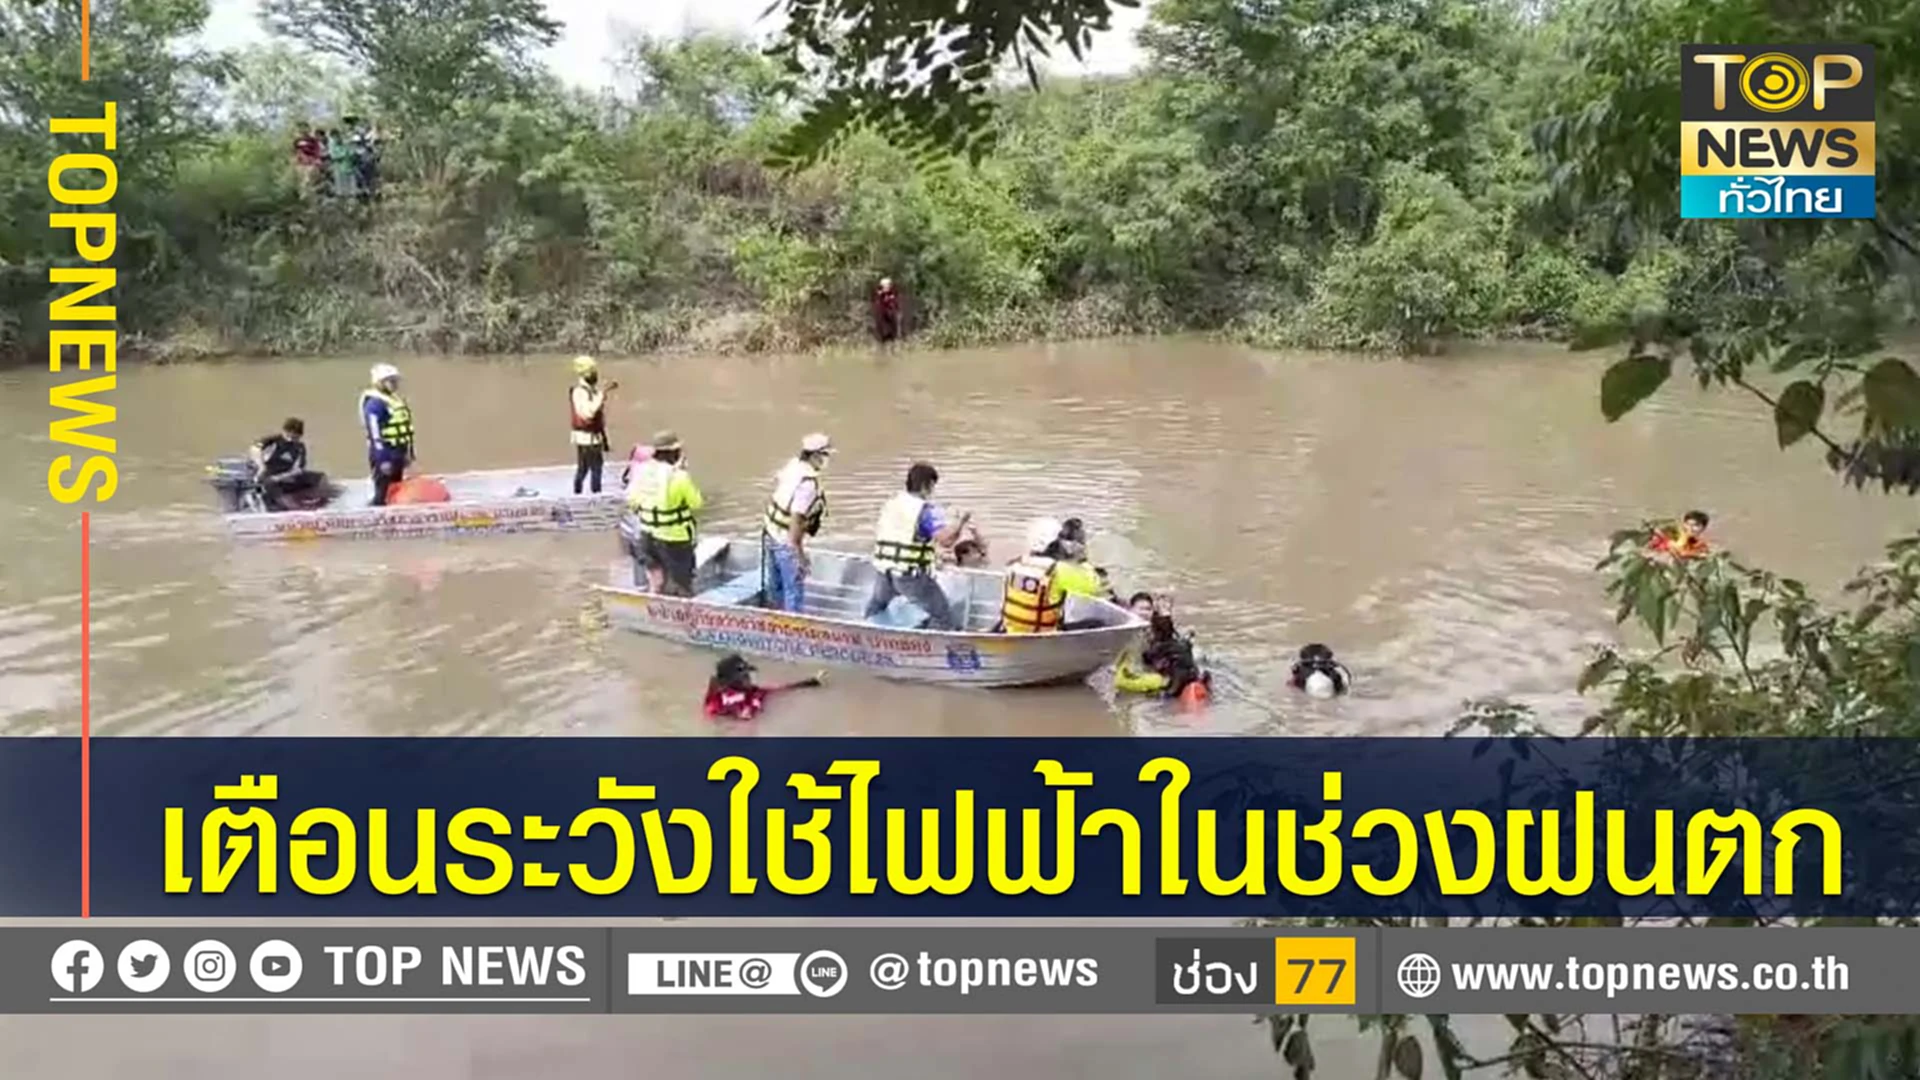 พบแล้วร่างหญิงลงเก็บปั้มน้ำ ถูกไฟช็อตร่างร่วงลงแม่น้ำ กู้ภัยเผยการช่วยเหลือสุดลำบาก